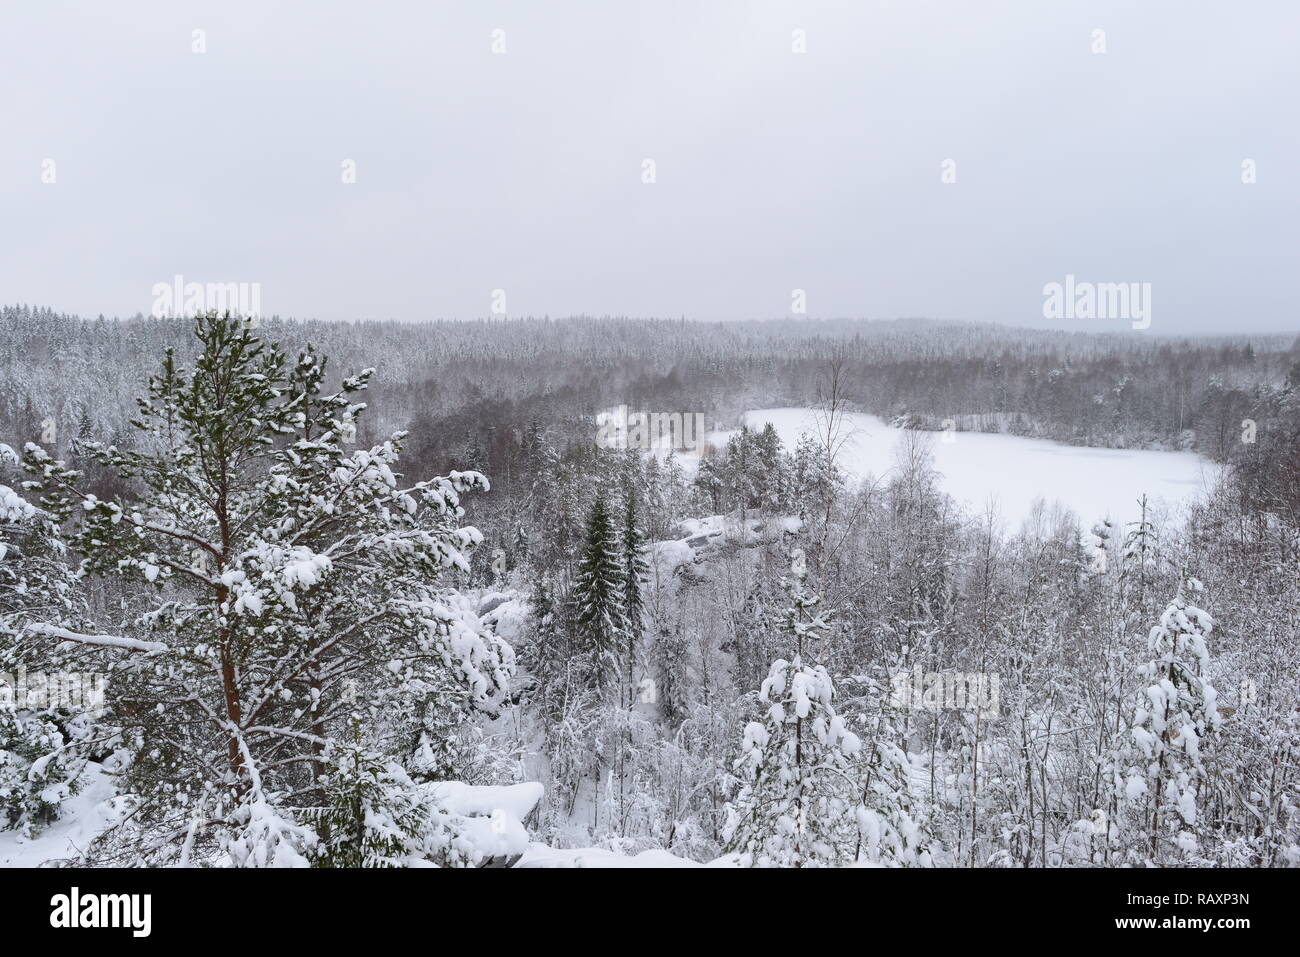 Temps de neige en hiver dans les hautes terres de la forêt et lac gelé dans la neige Banque D'Images